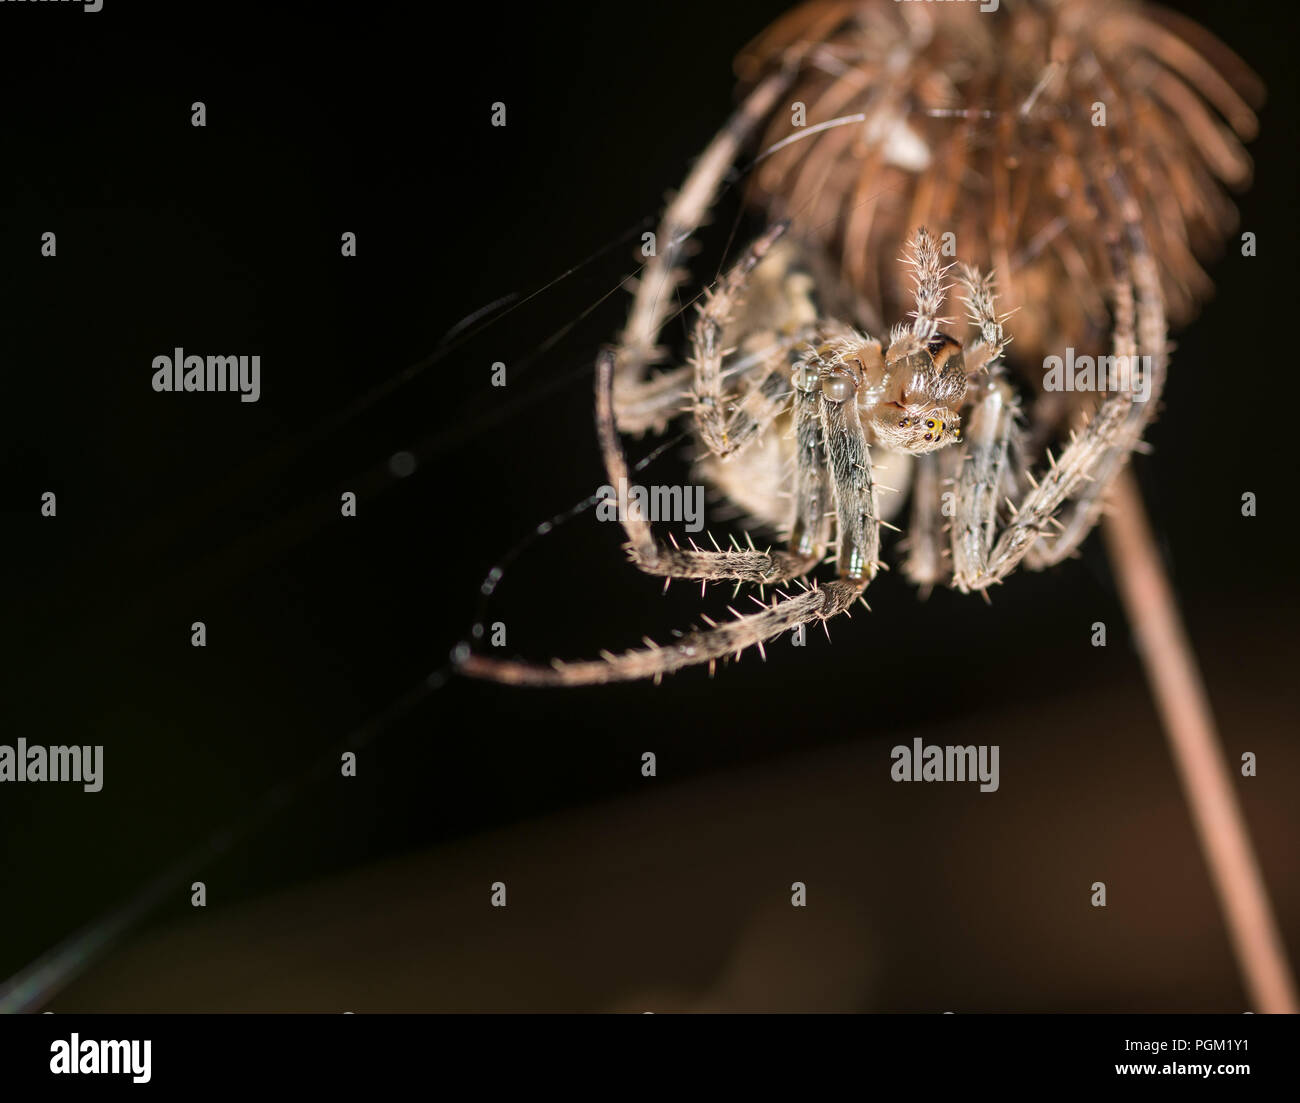 Crociera a croce su la gemma di un fiore in un angolo del suo web Foto Stock